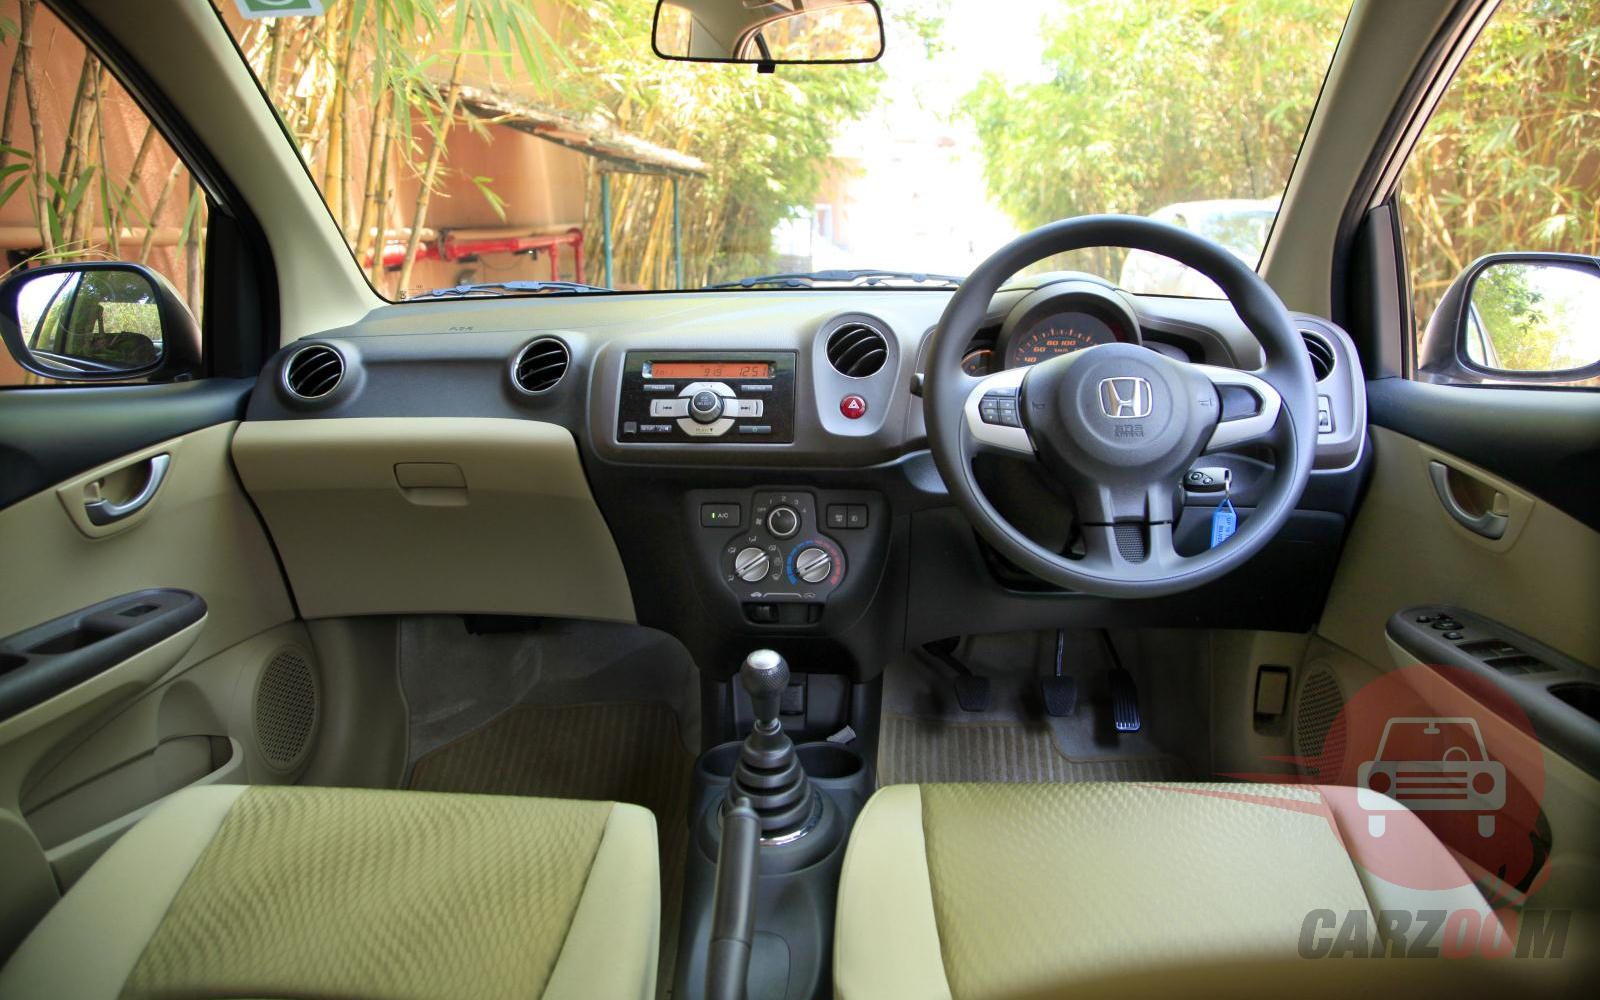 Honda Amaze Interiors Dashboard